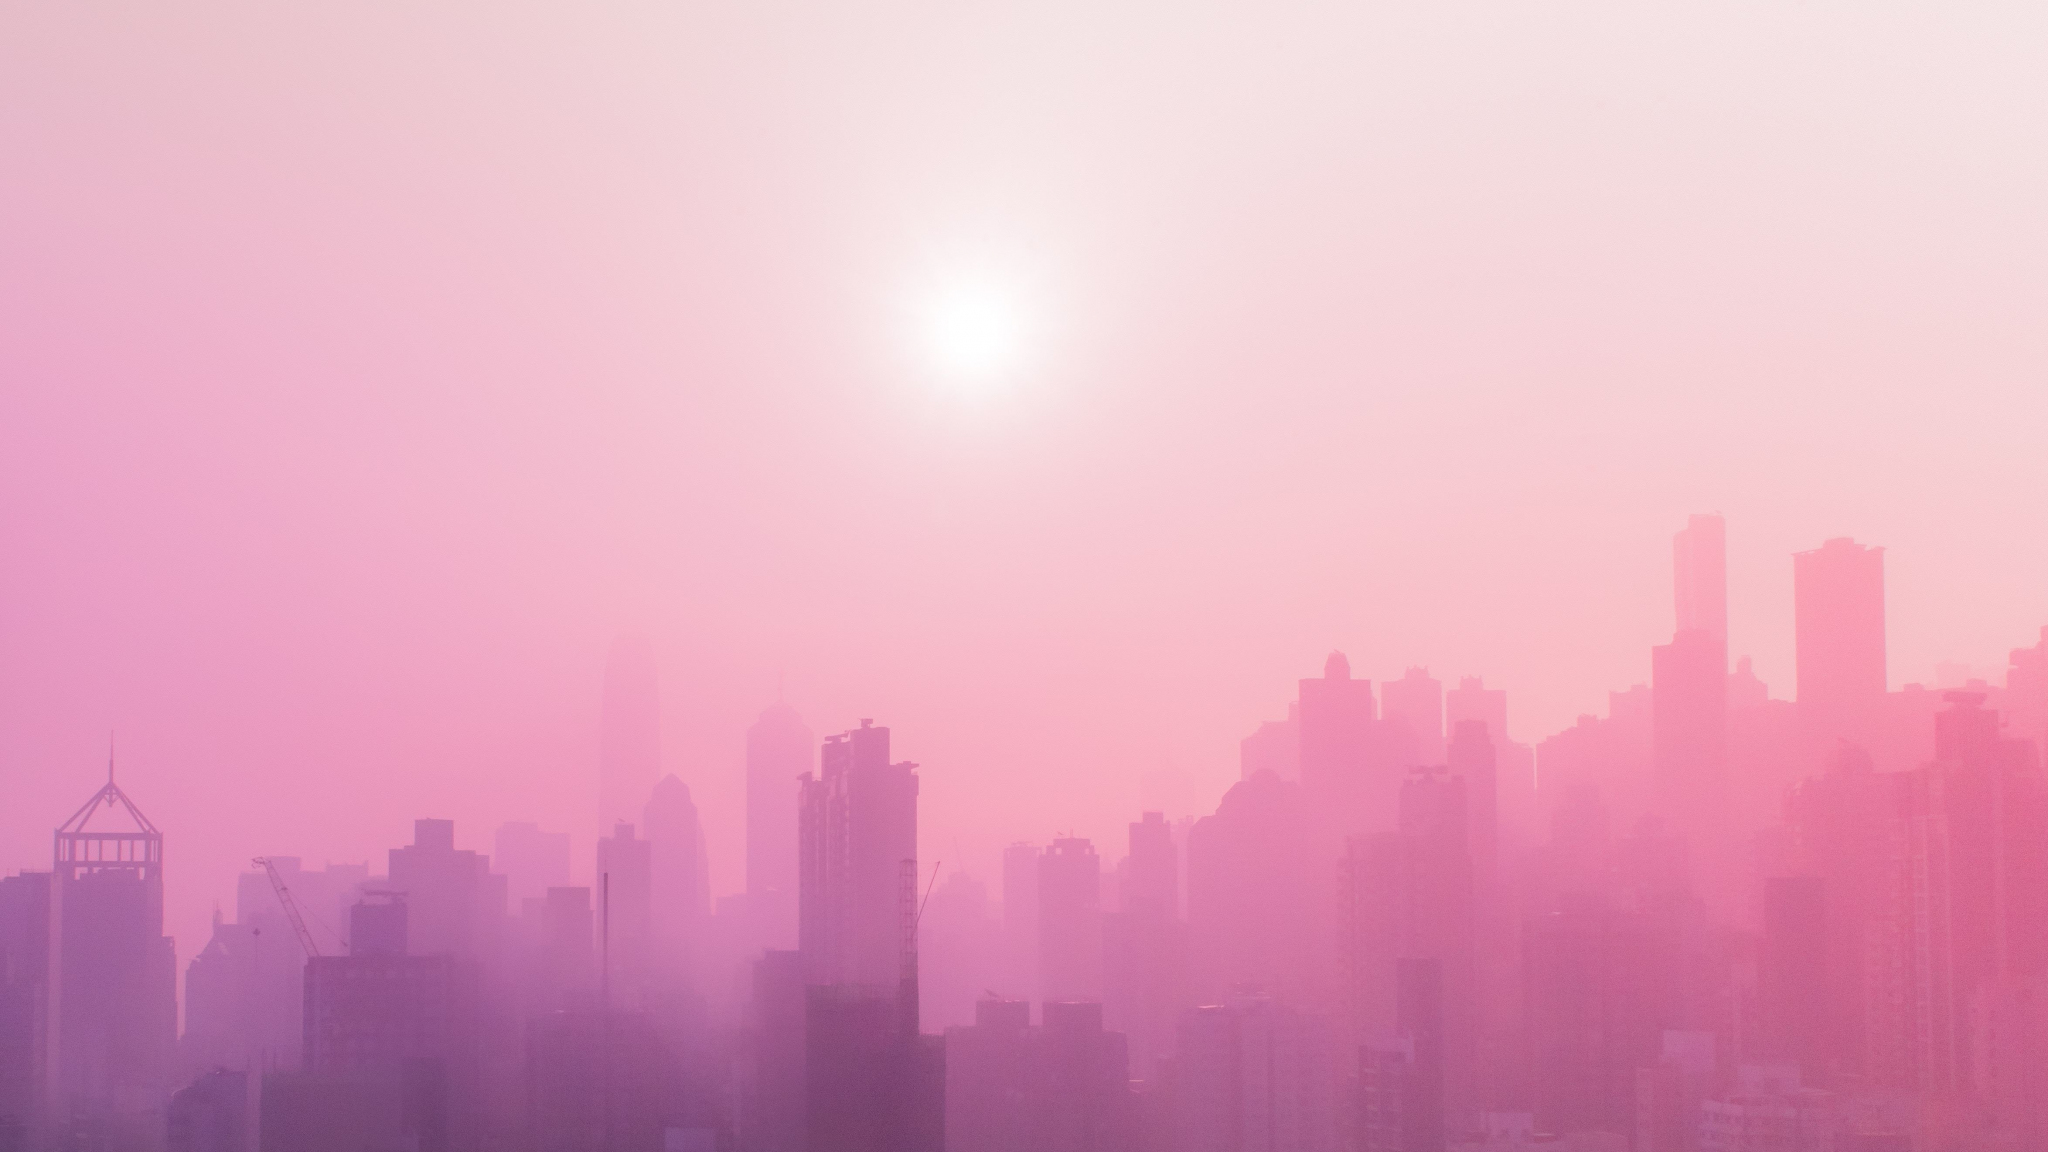 Với phong cách đô thị và gam màu hồng tươi trẻ, hình nền này sẽ khiến bạn mê mẩn và thích thú. Nó thật đặc biệt và sẽ đem lại không gian tràn đầy năng lượng cho bạn.